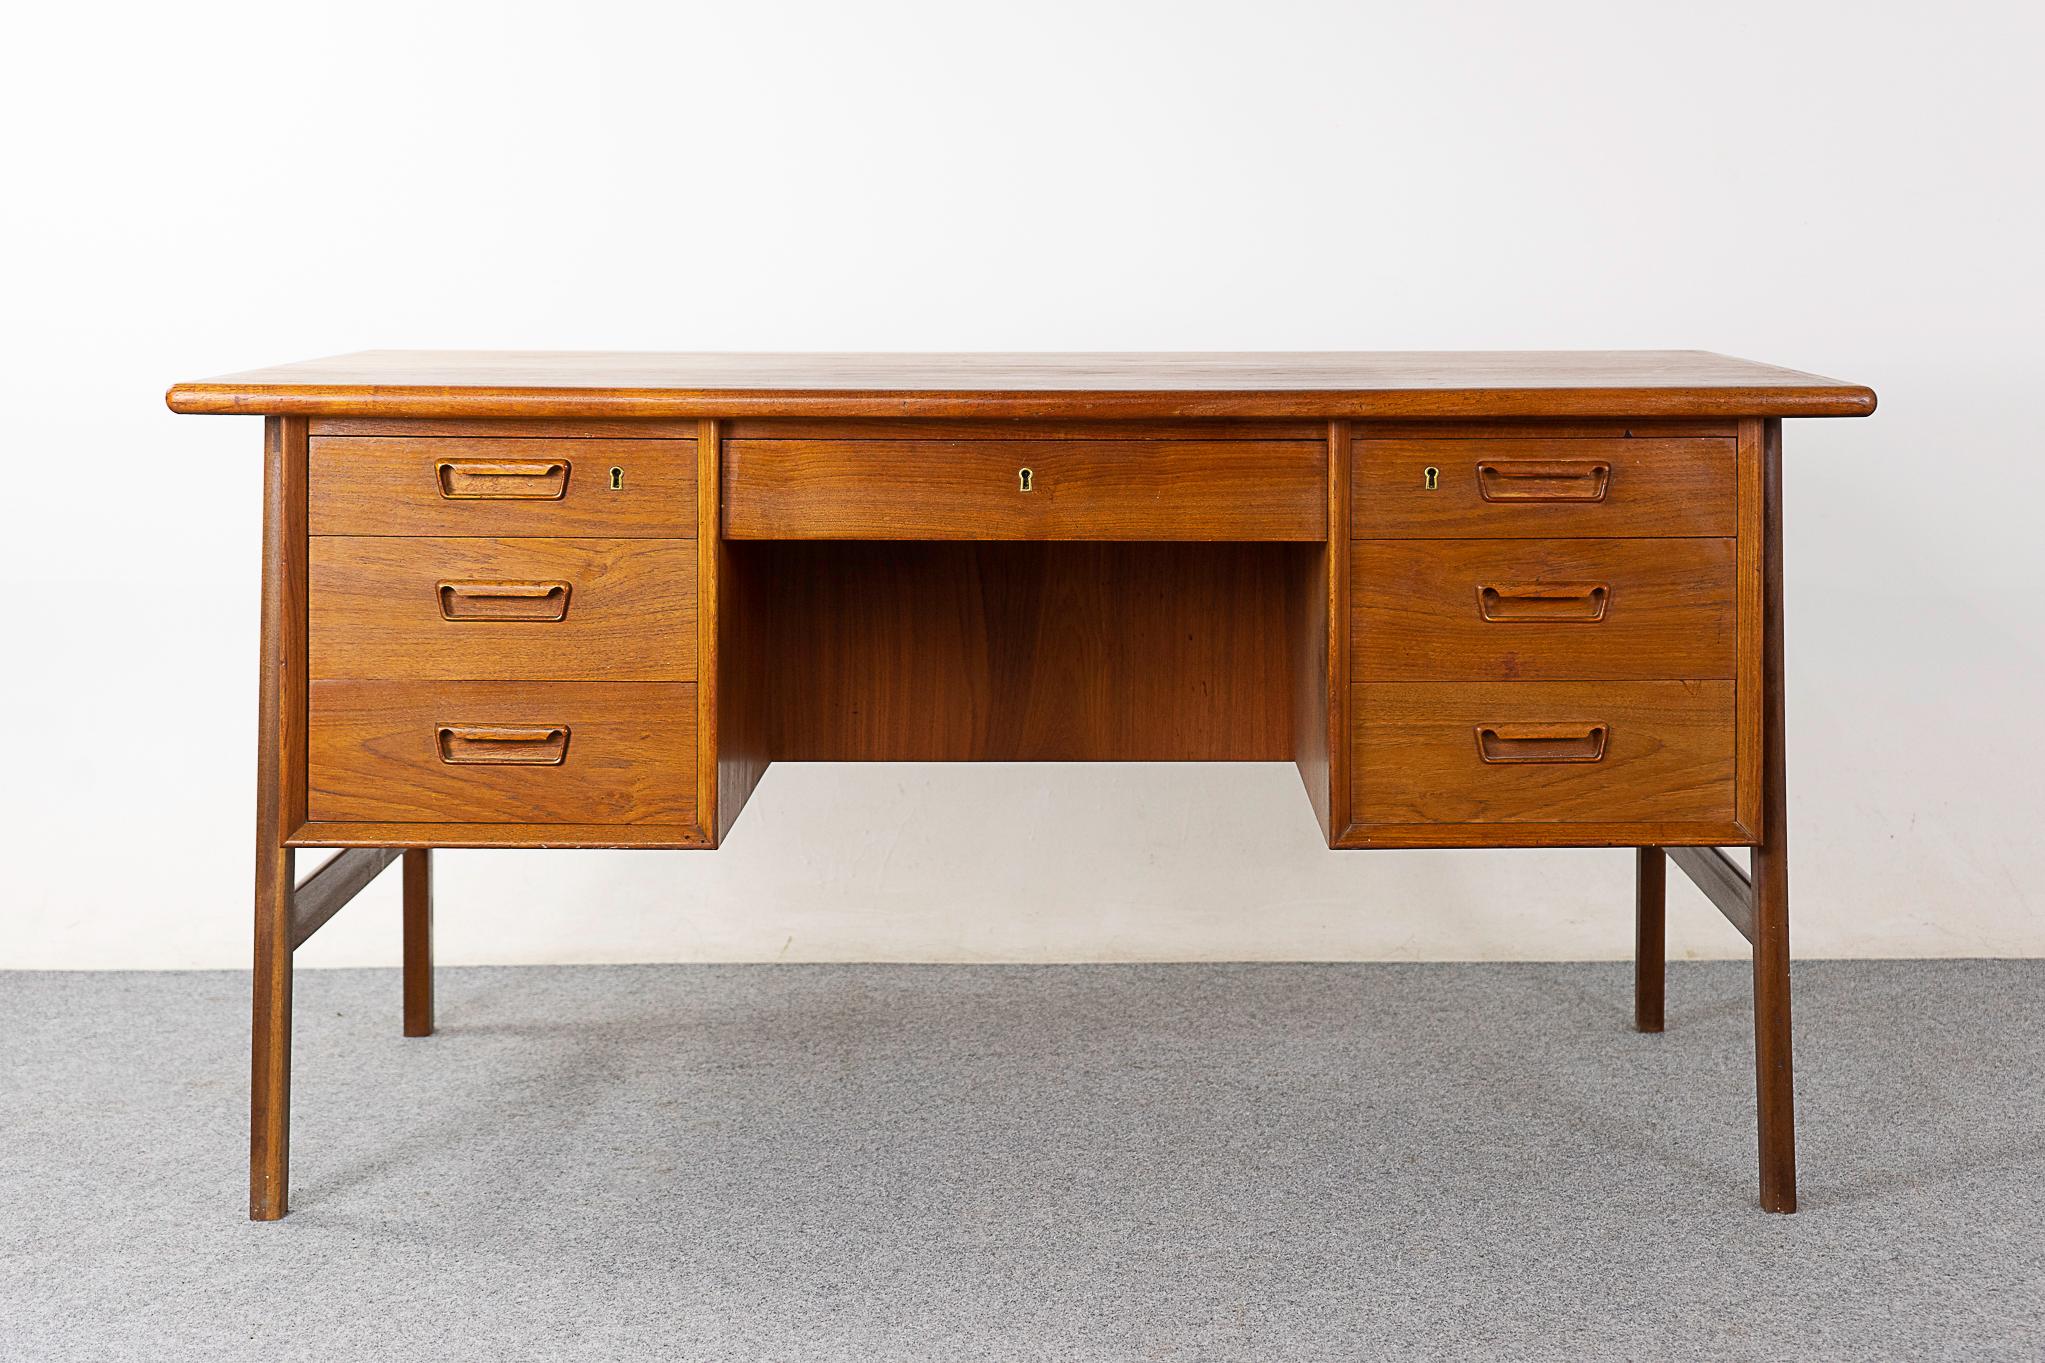 Dänischer Schreibtisch aus Teakholz, ca. 1960er Jahre. Robuste Arbeitsfläche! Beidseitig verarbeitet und in der Mitte eines Raumes platziert, sieht er aus jedem Blickwinkel fantastisch aus. Auf der Rückseite befindet sich eine charmante